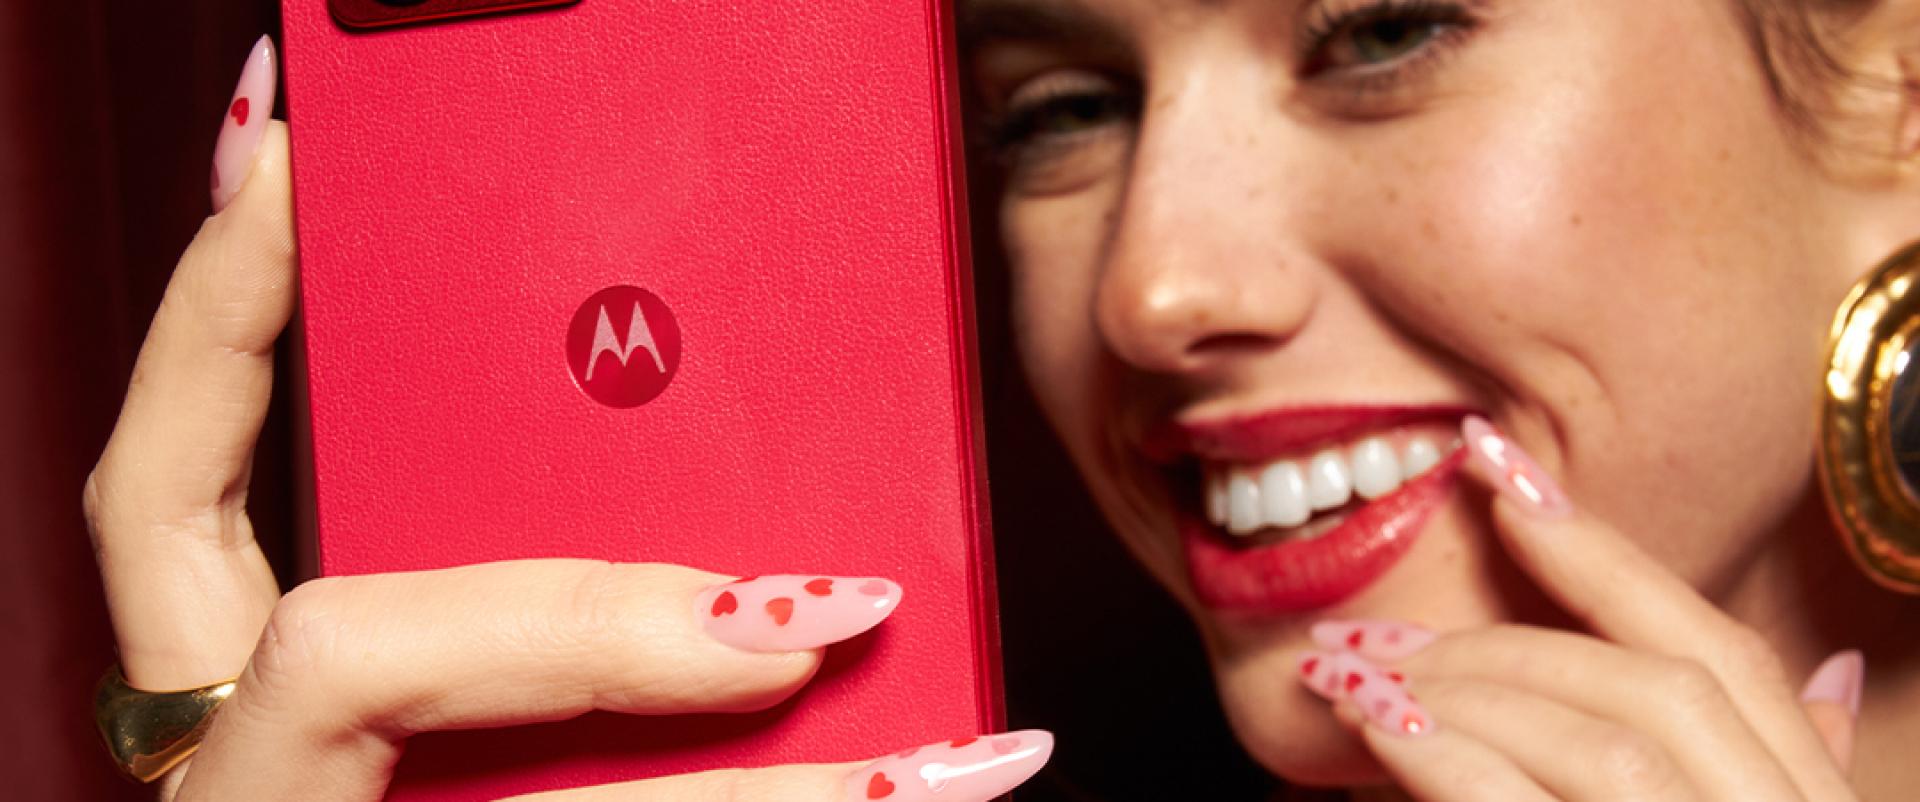 Walentynkowy konkurs Motorola i NEONAIL. Do wygrania smartfony i lakiery w wymarzonych kolorach